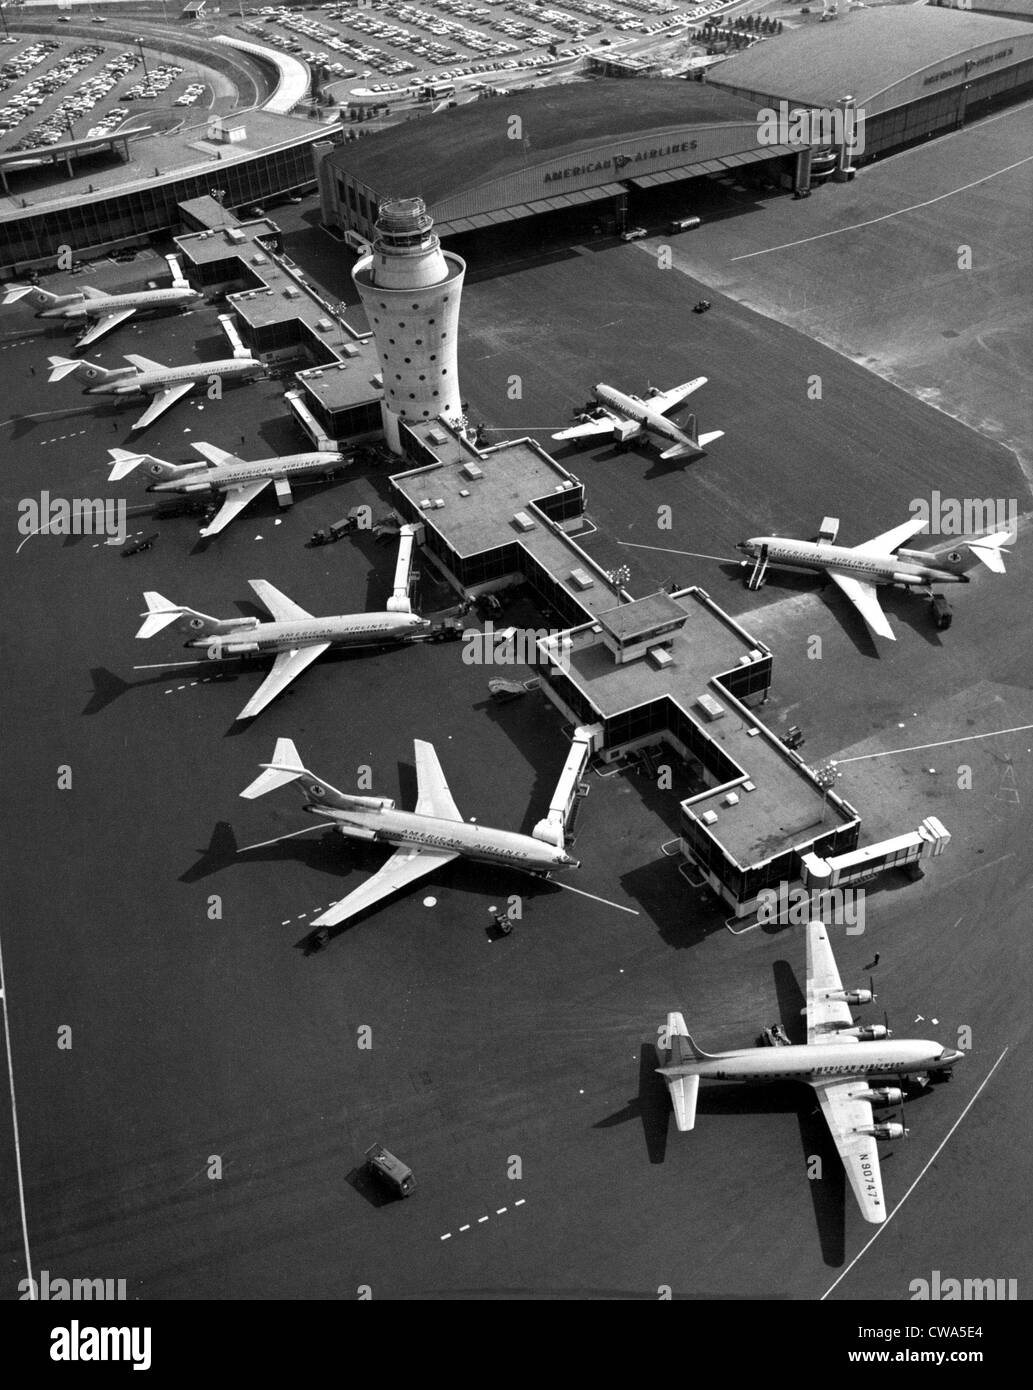 Sechs 727 American Airlines Boeing Astrojets am Flughafen LaGuardia, New York, 1965... Höflichkeit: CSU Archive / Everett Collection Stockfoto